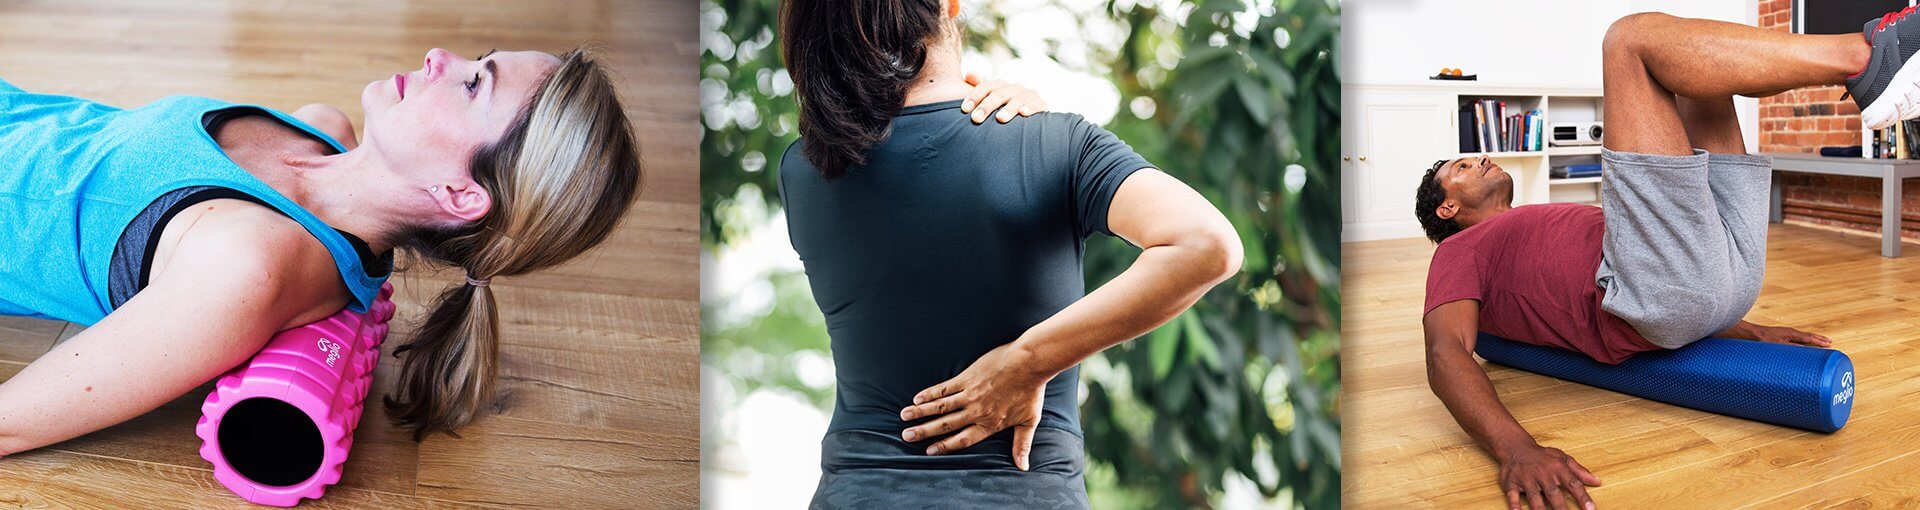 10 Foam Roller Exercises for Back Pain